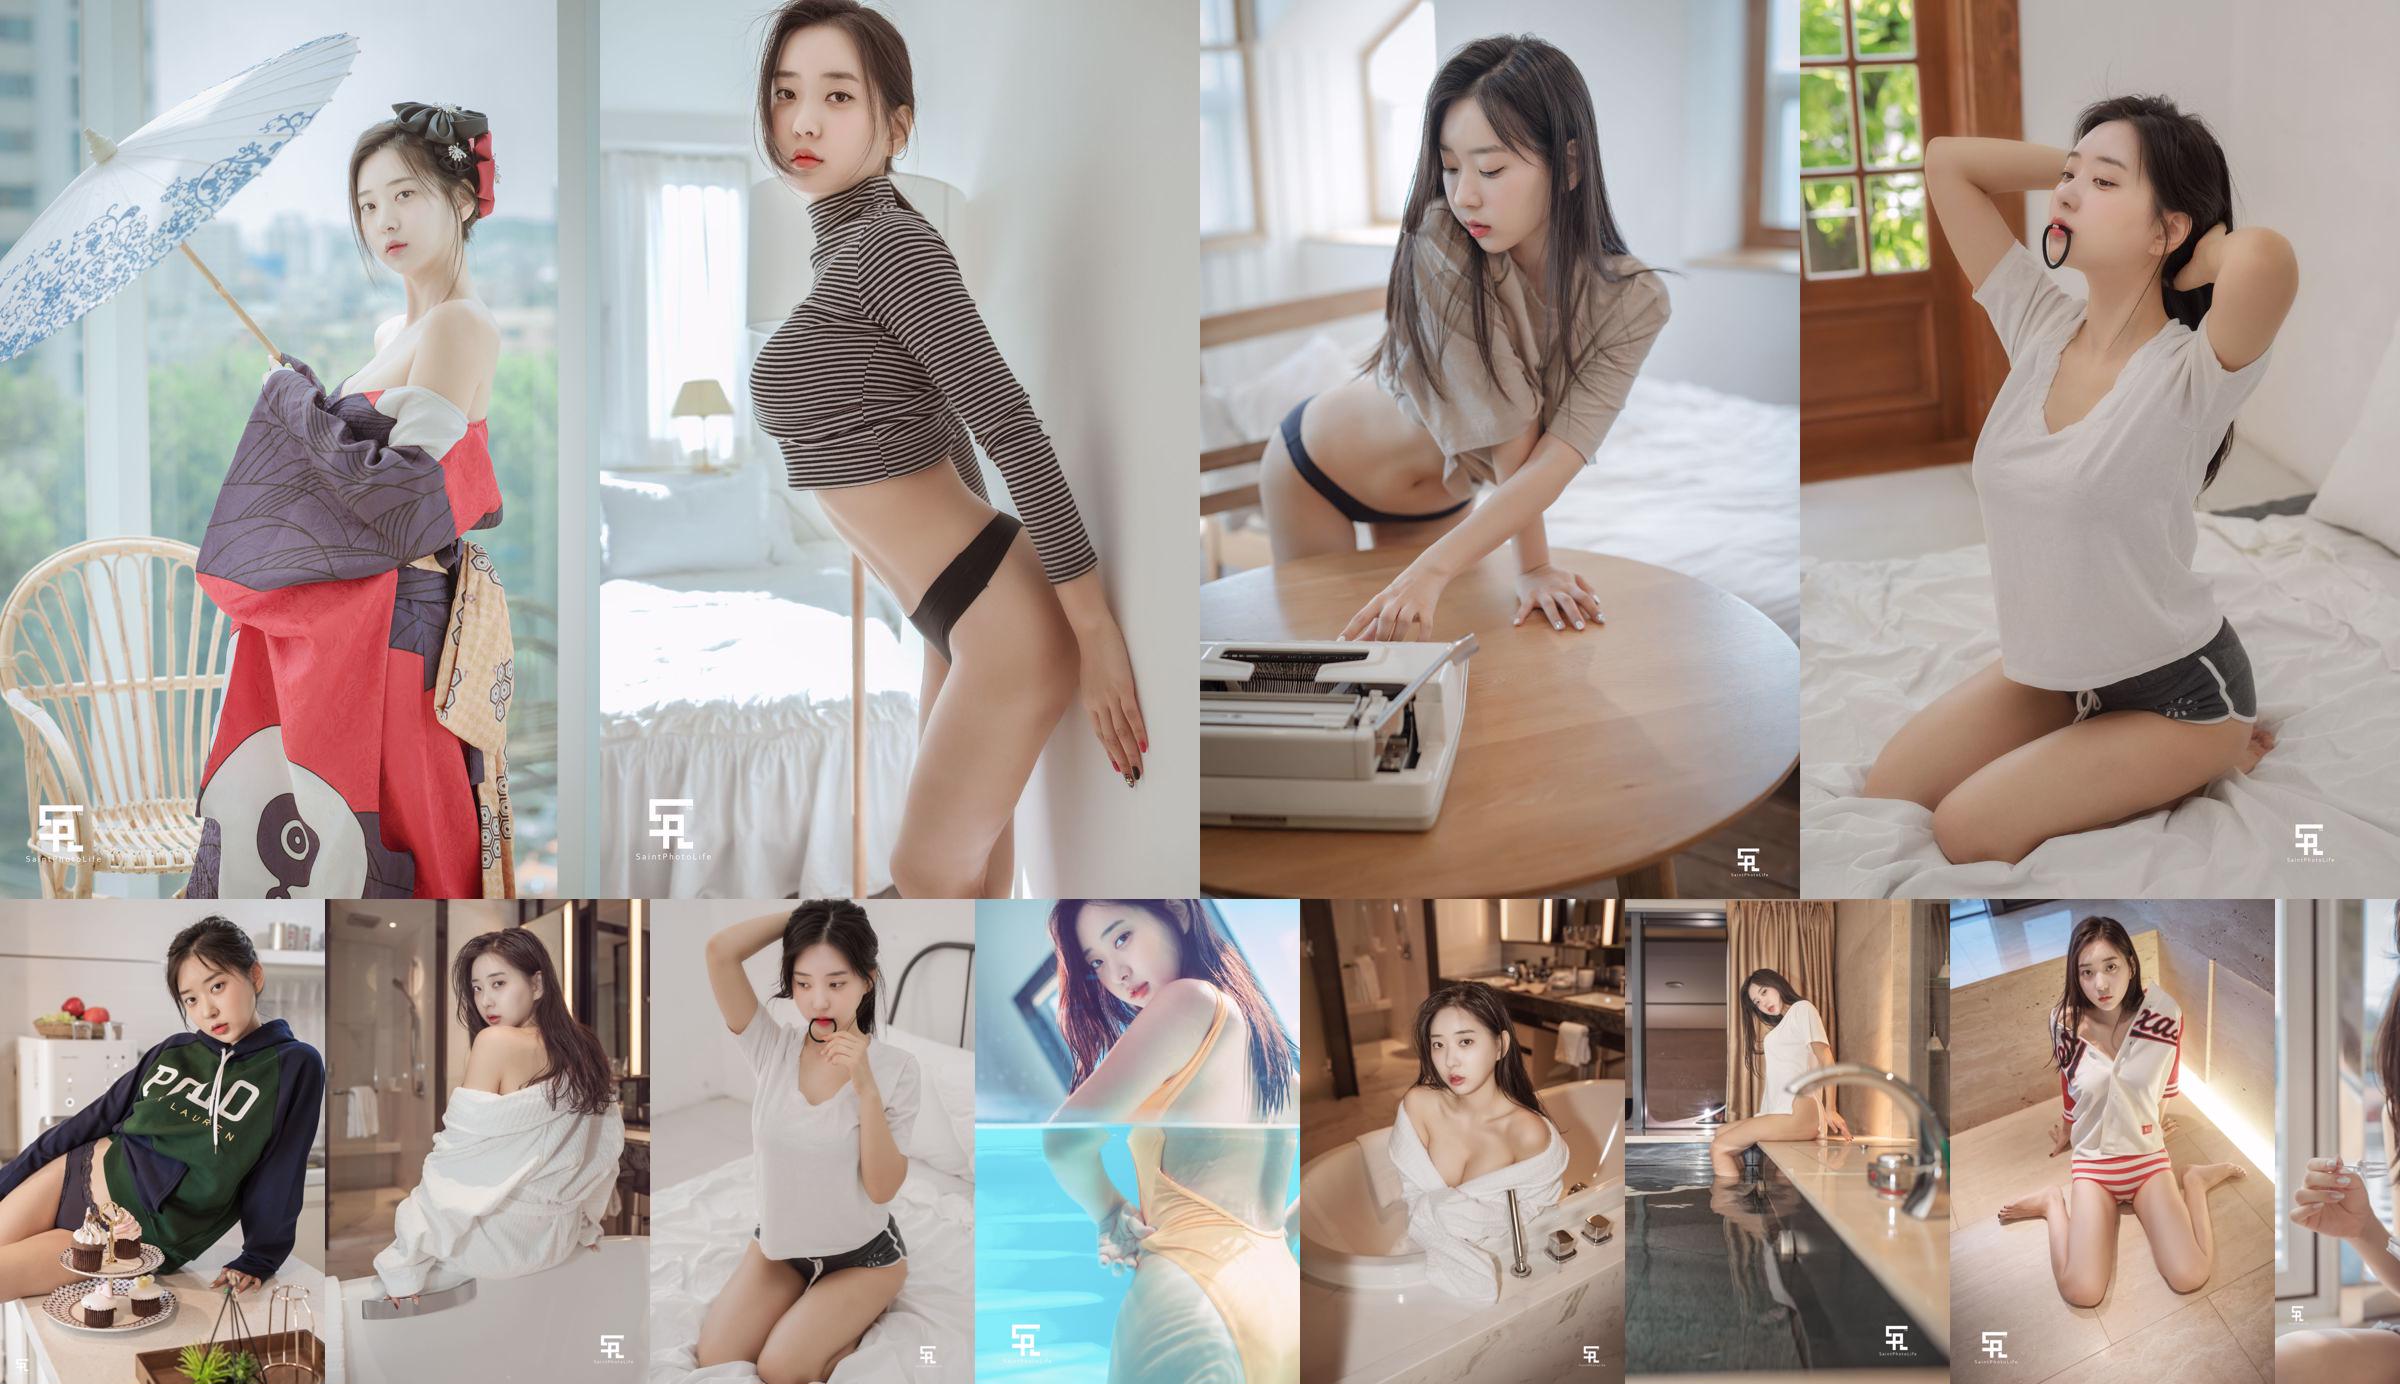 [saintphotolife] - Foto della ragazza coreana Zenny estate 2019 parte 2 No.1a6543 Pagina 1